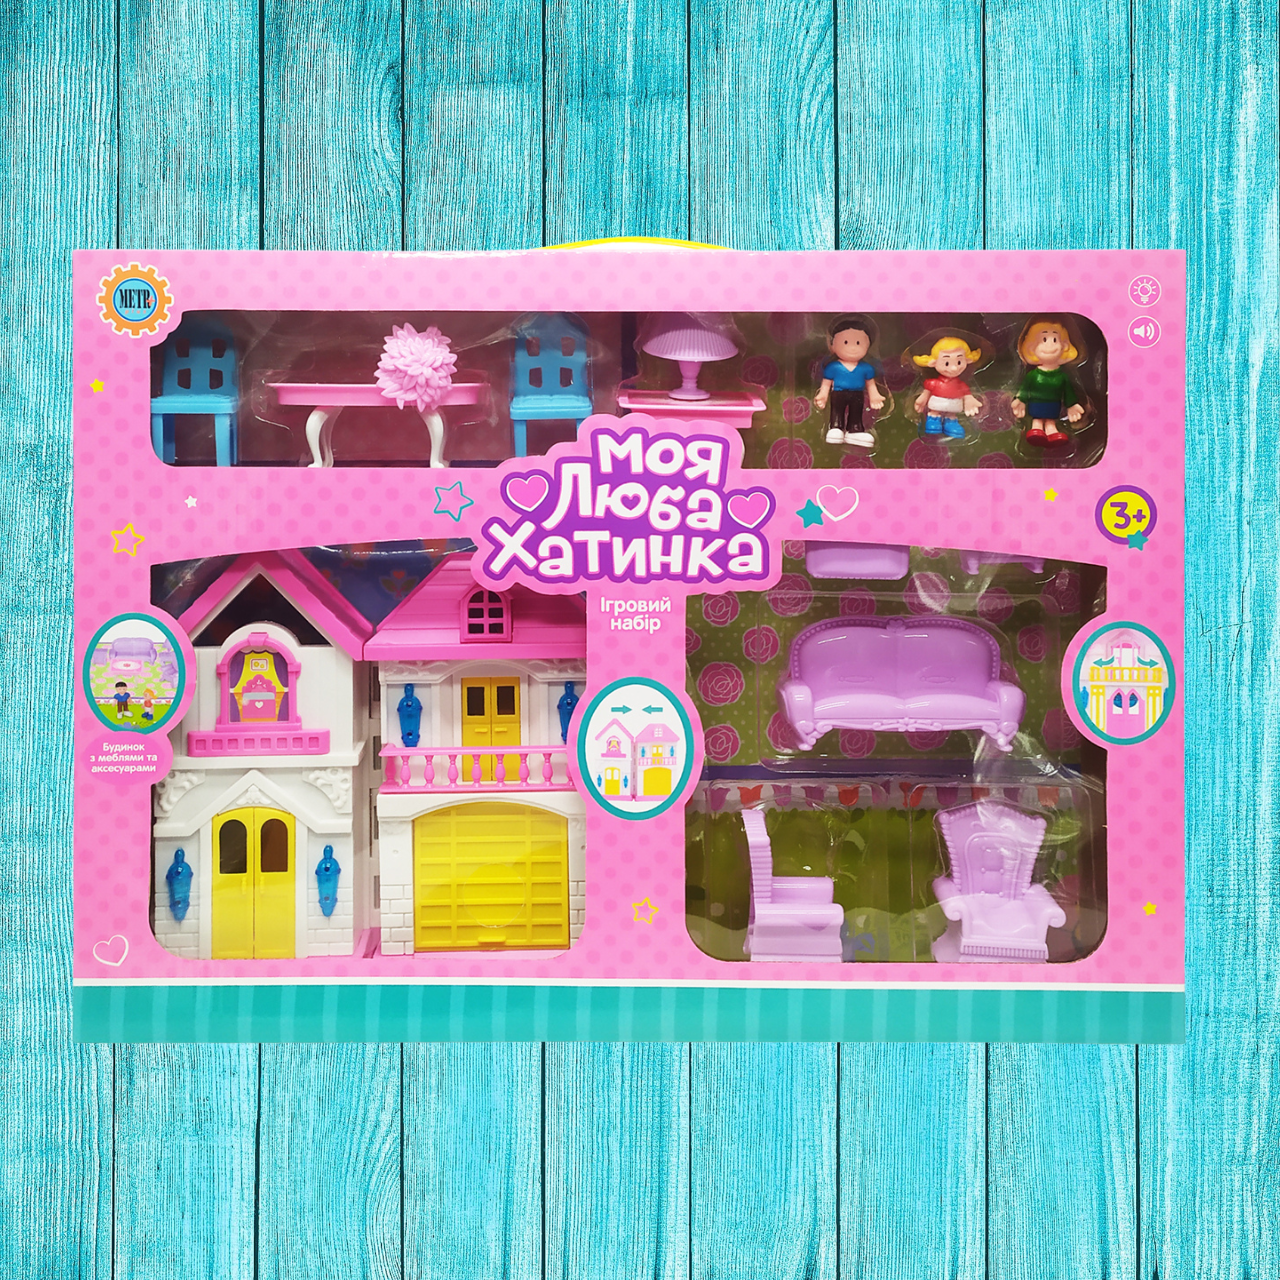 Ігровий набір Ляльковий будиночок Bambi WD-926-AB меблі та 3 фігурки (Фіолетовий)